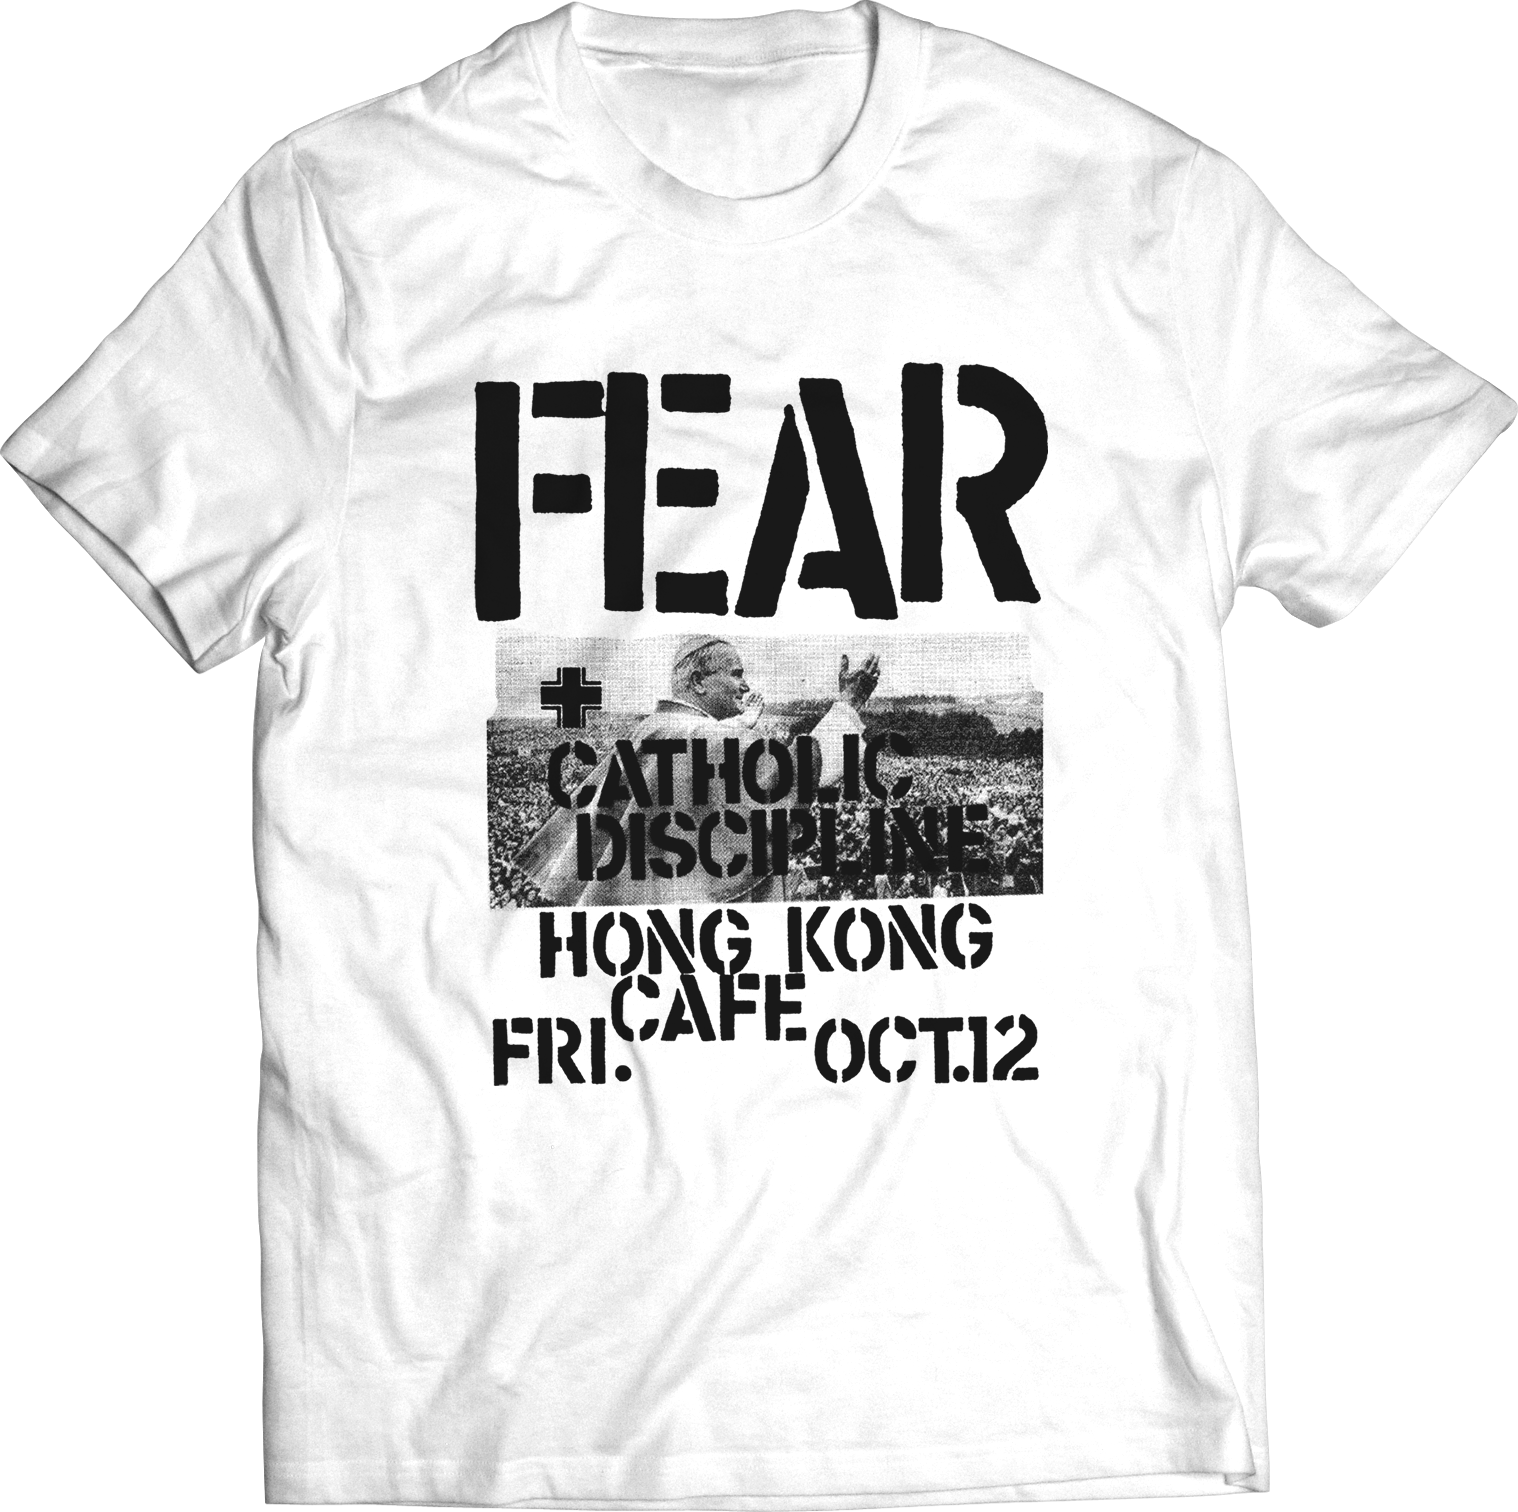 FEAR: "HONG KONG CAFE" FLYER T-SHIRT